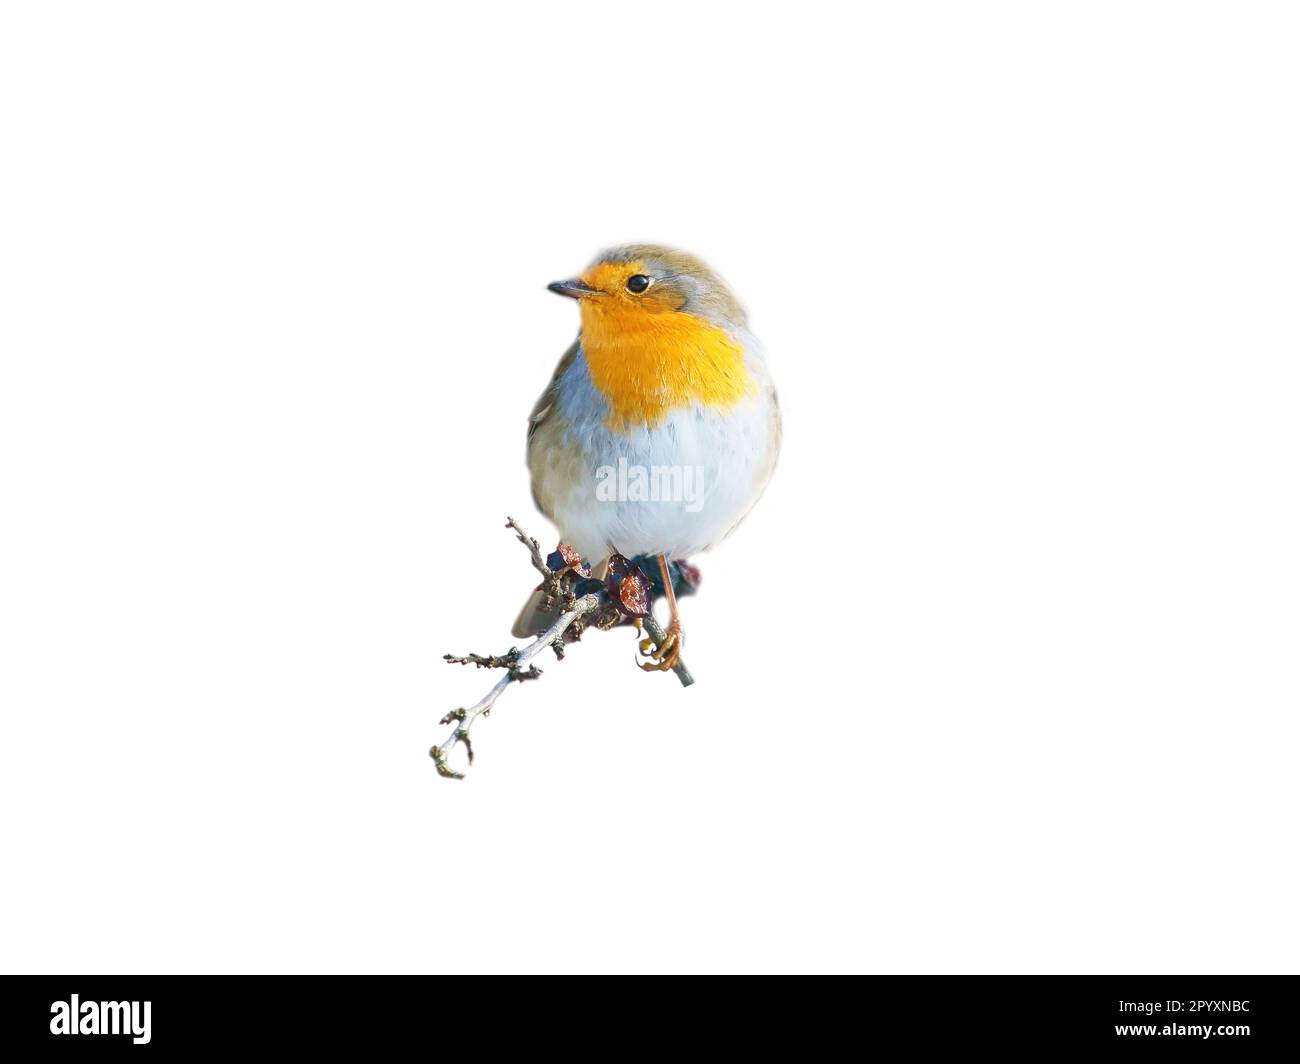 robin isolé, rogné pour édition. Songbird avec un plumage rouge, blanc et orange. Oiseau de la nature Banque D'Images